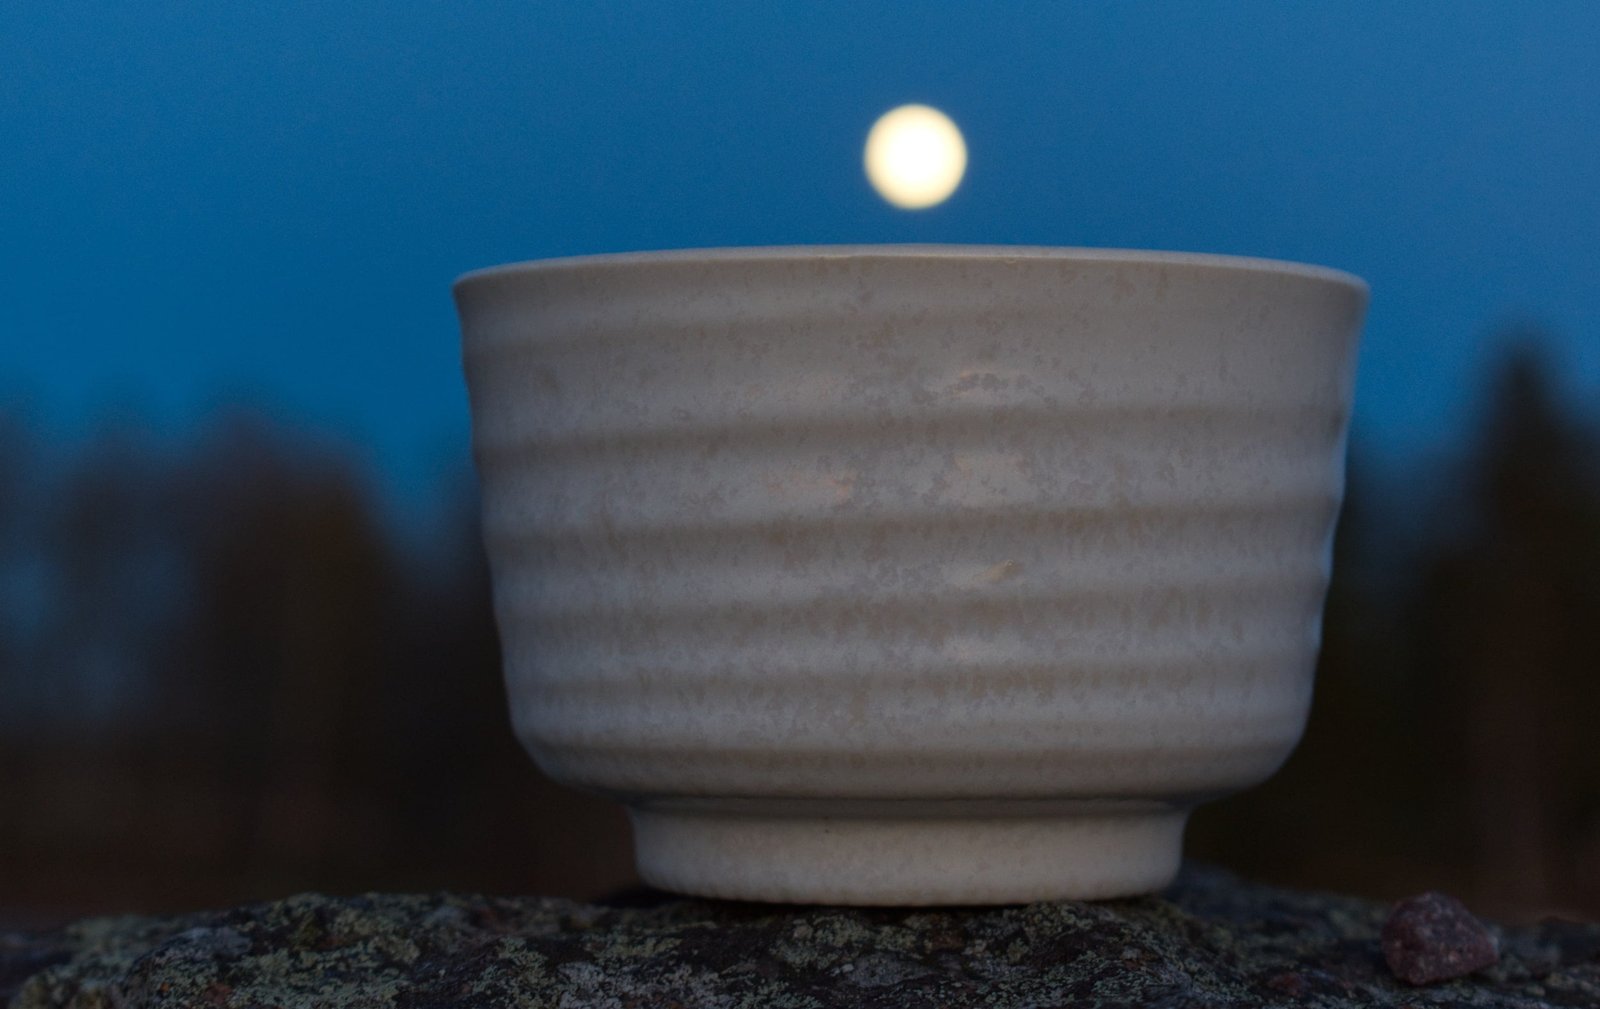 Matchaschale aus japanischer Keramik Akira True Tea